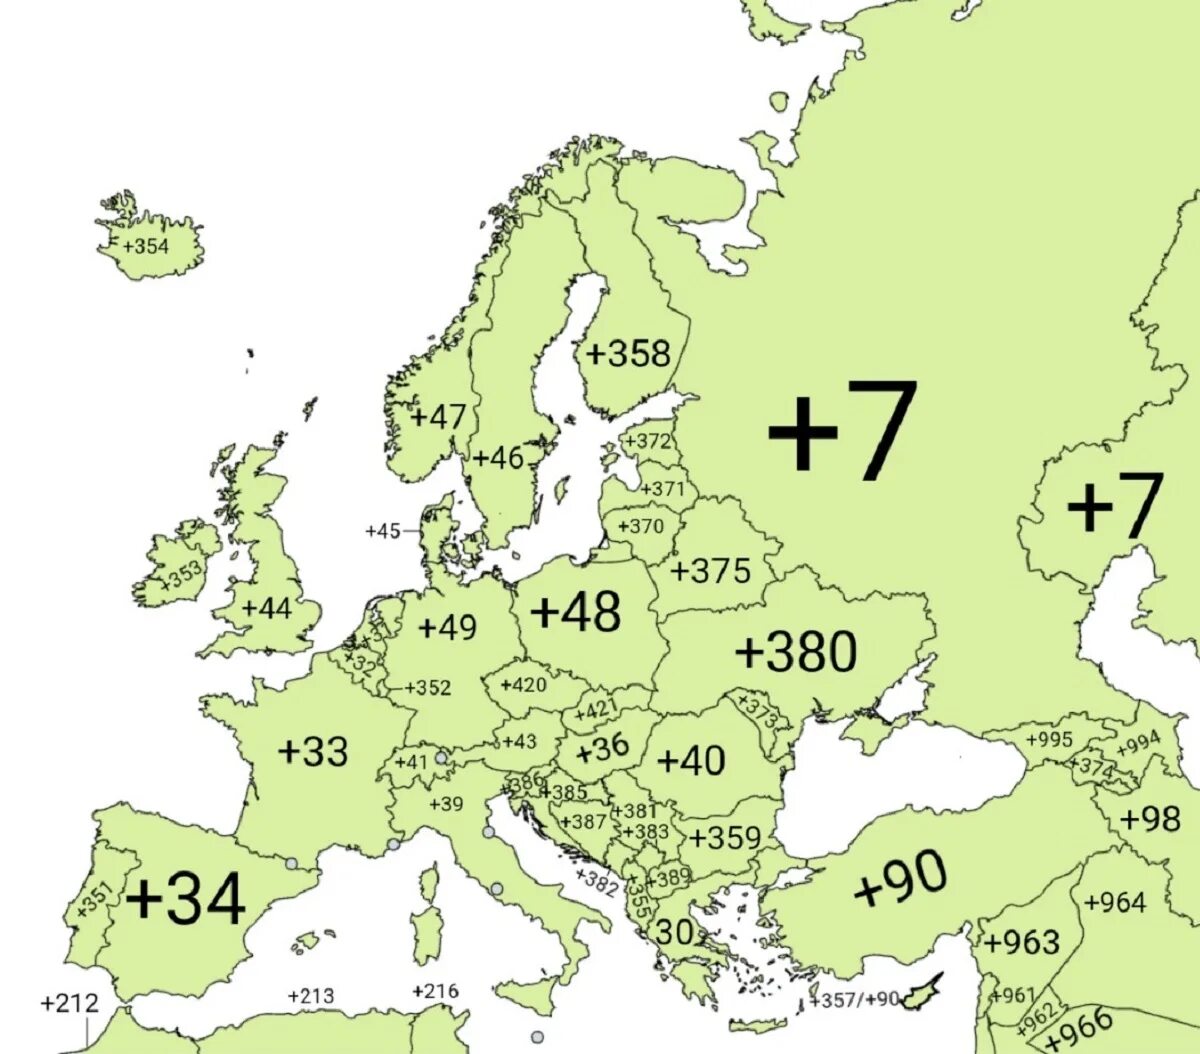 Коды телефонов стран. Телефонные коды европейских стран. Карта - Европа. Коды телефонов стран Европы. Код страны 358